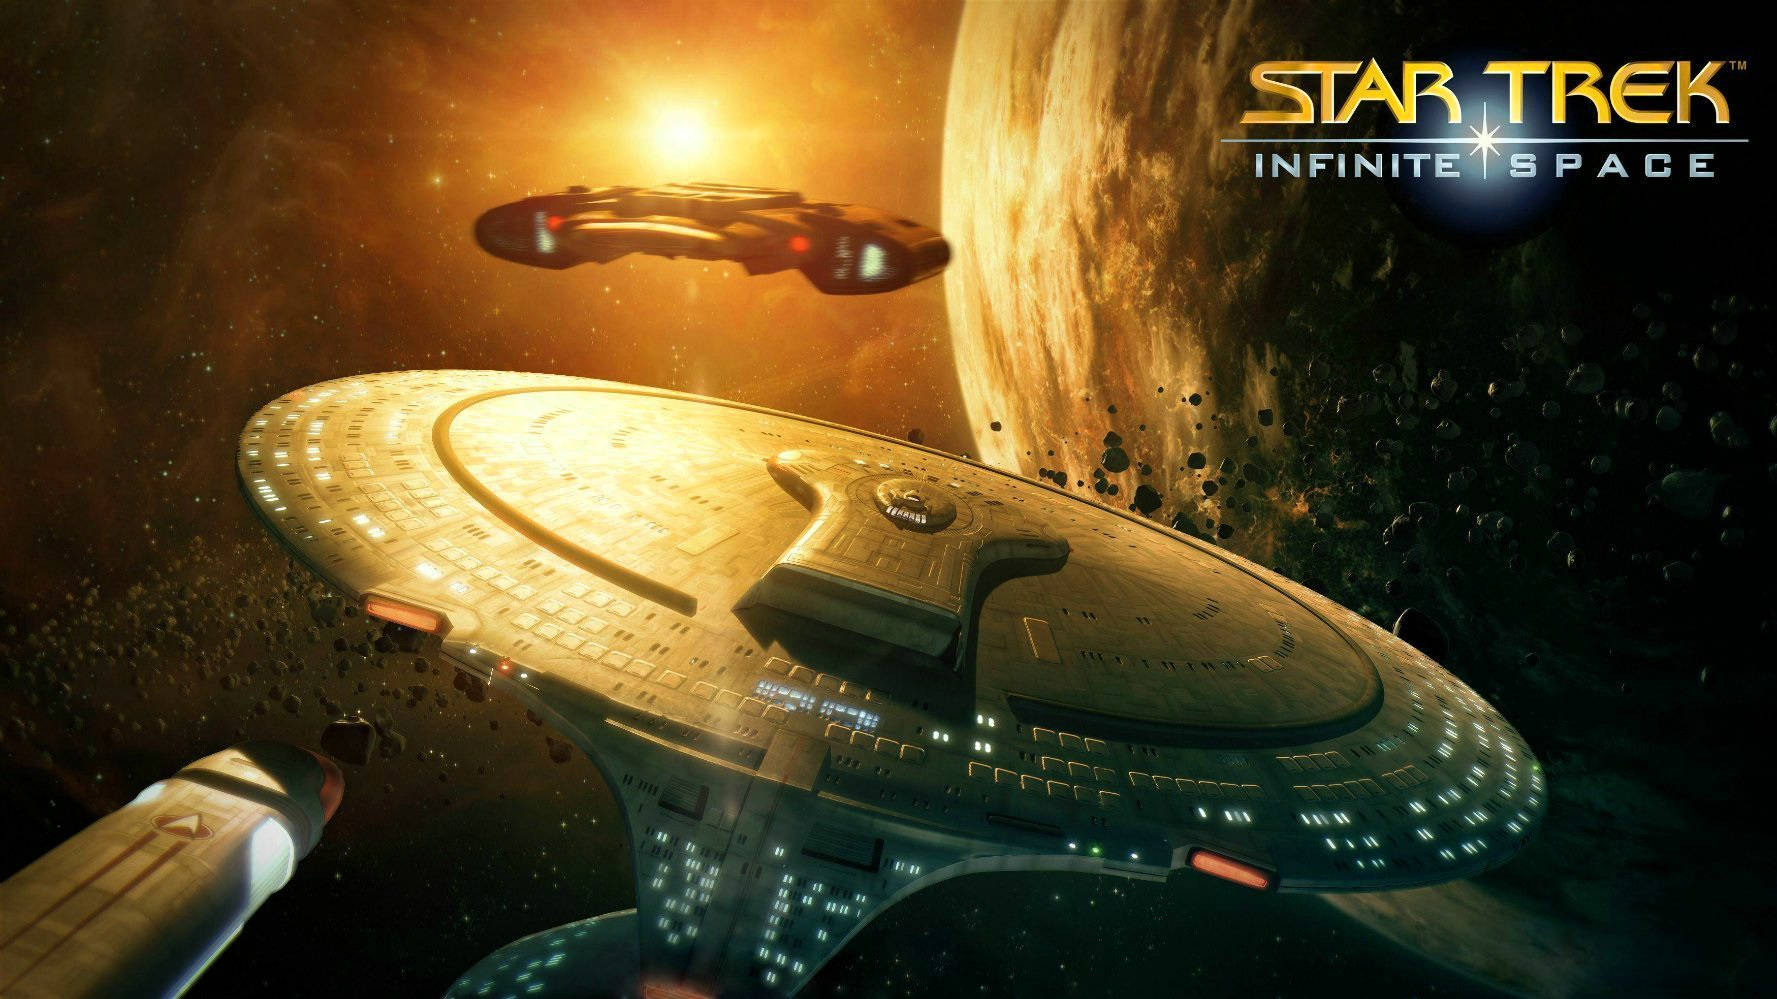 Star Trek Starship Star Trek Infinite Space Wallpaper